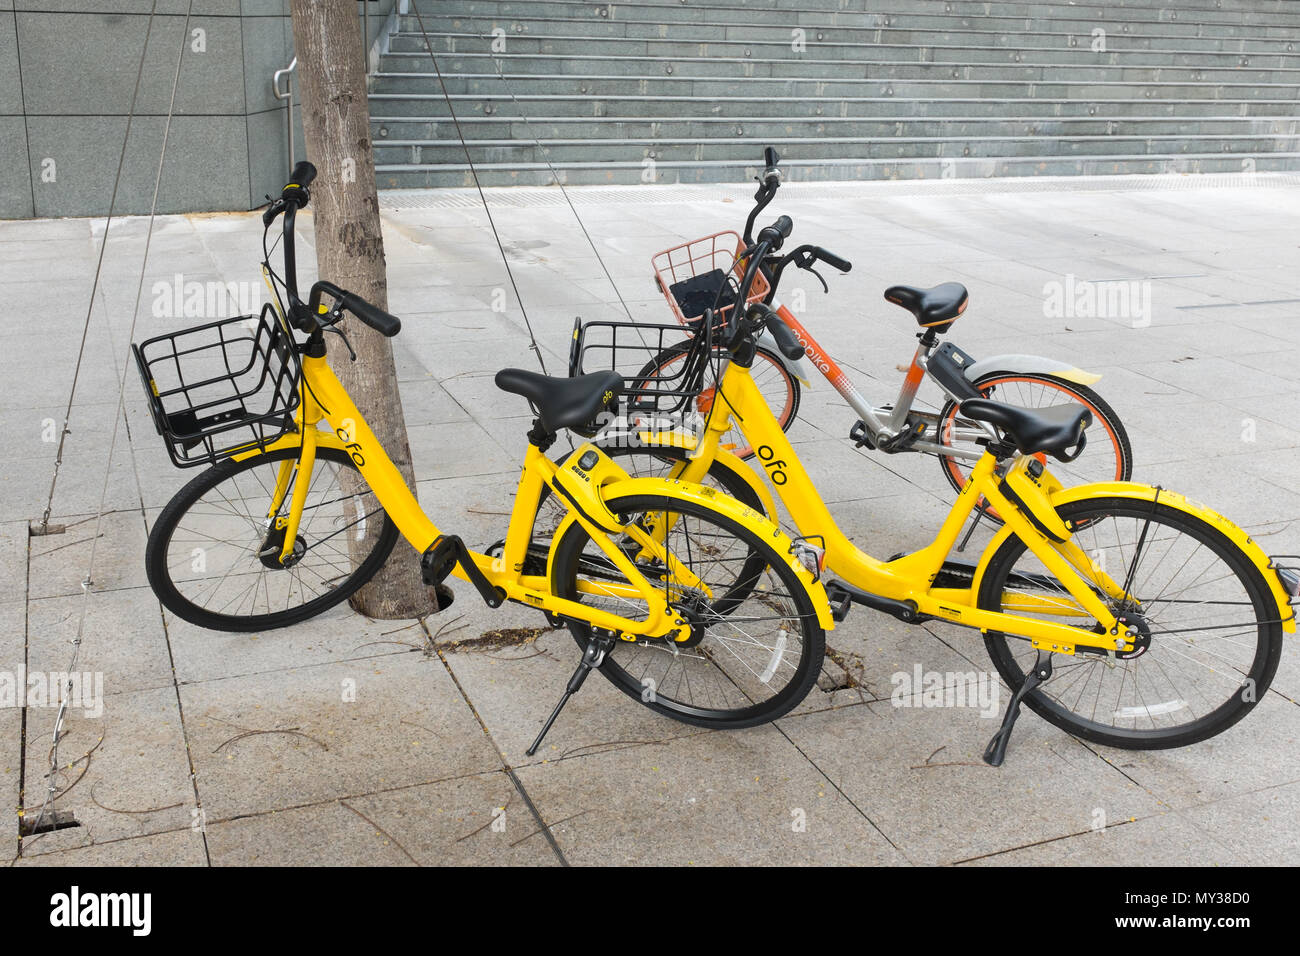 Station - freies Bike-sharing gelben ofo Fahrräder, die auf dem Gehsteig in Singapur Stockfoto